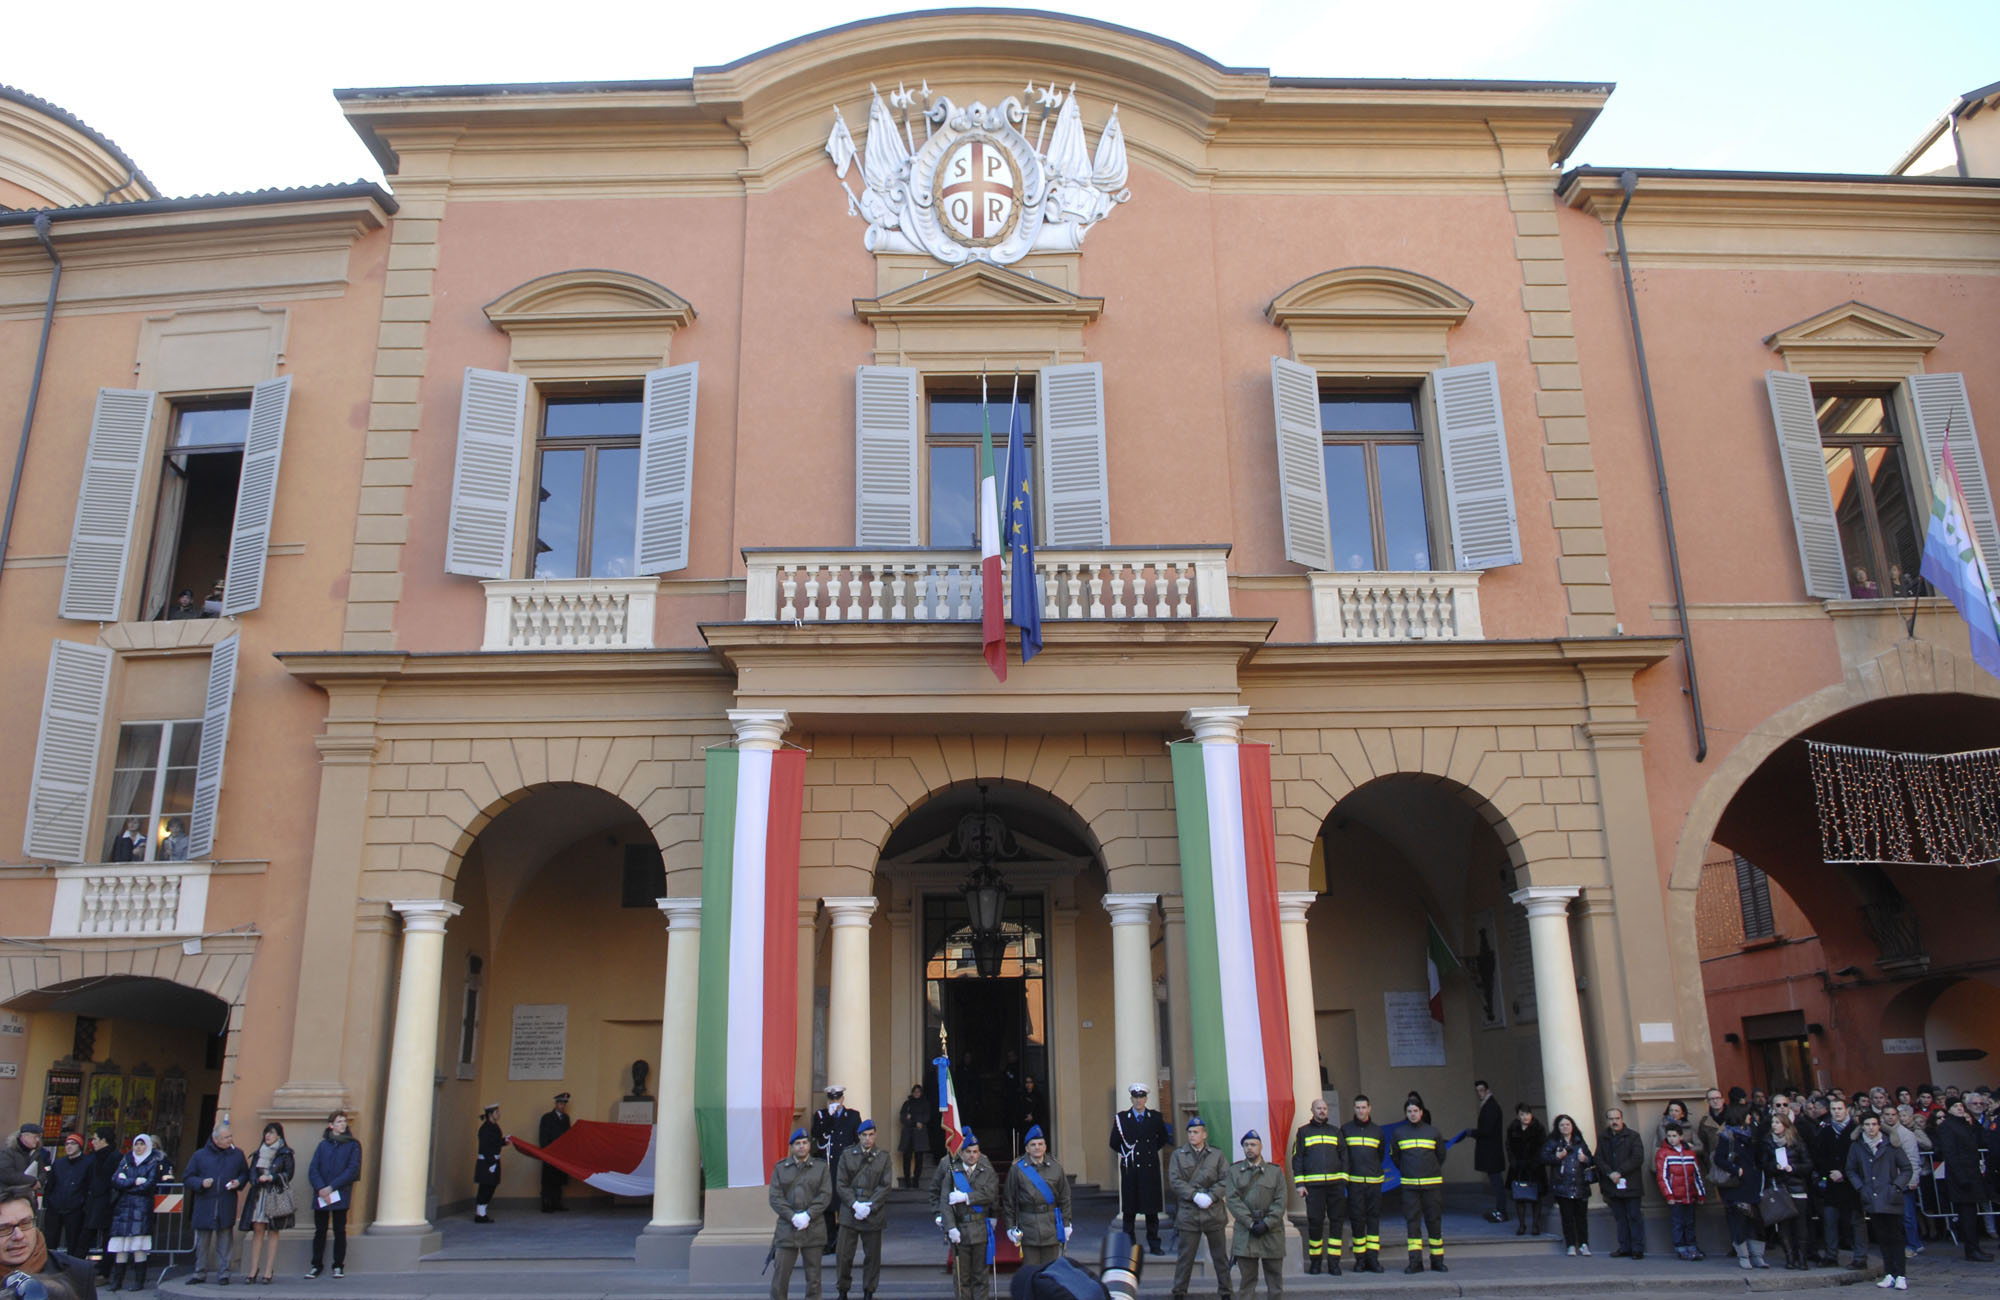 La visita di Monti a Reggio